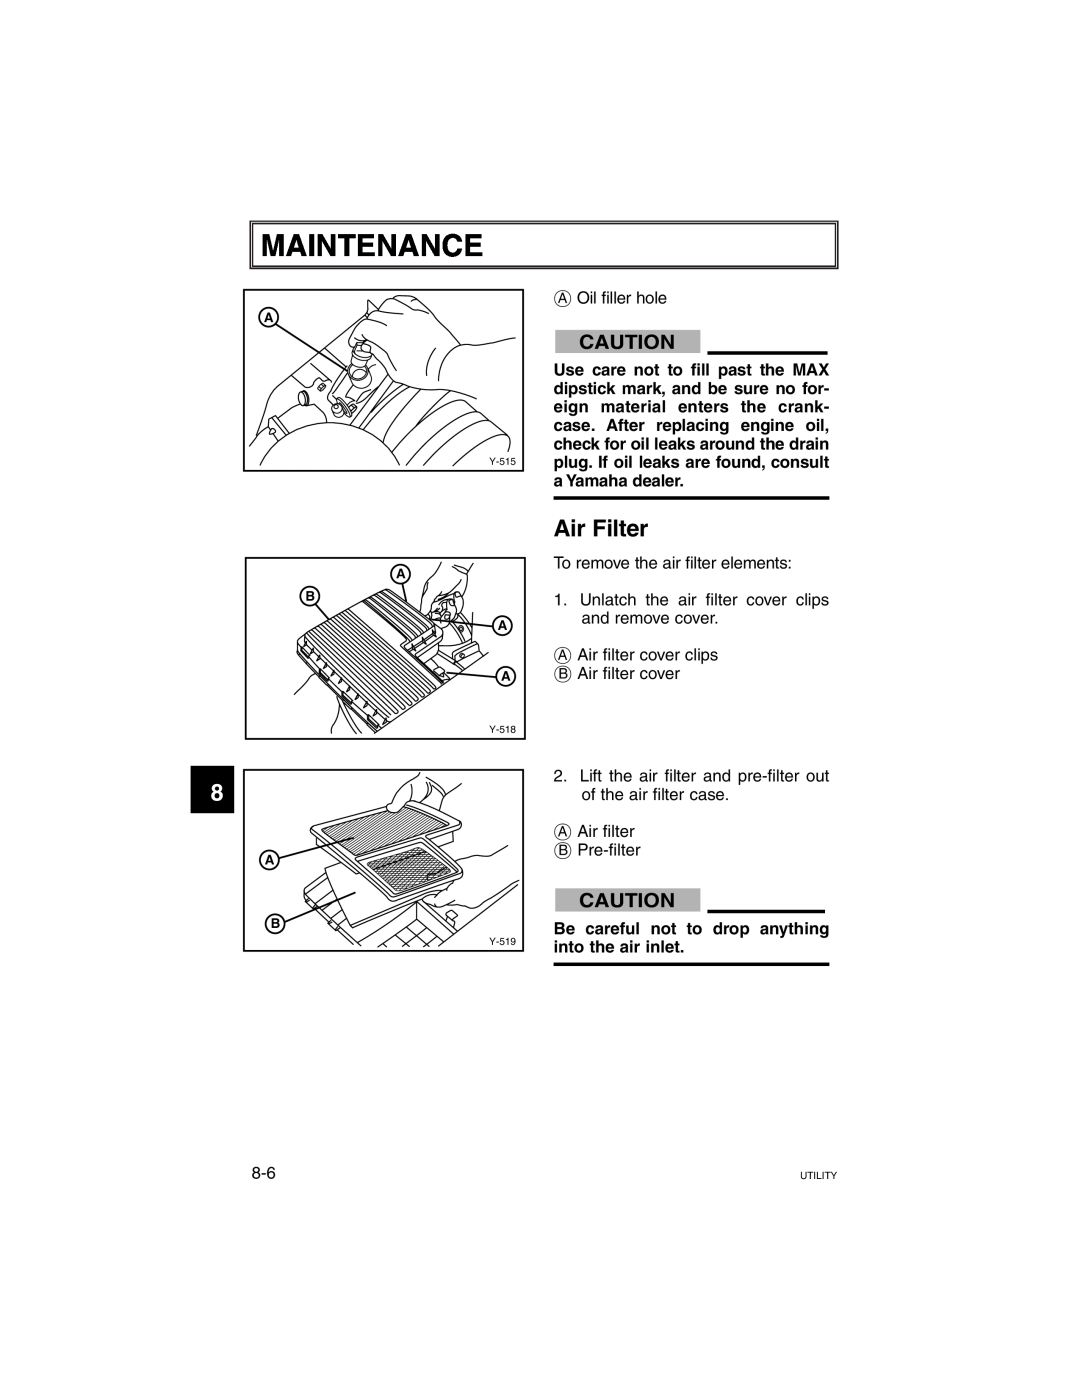 Yamaha G21A manual Maintenance, Air Filter 